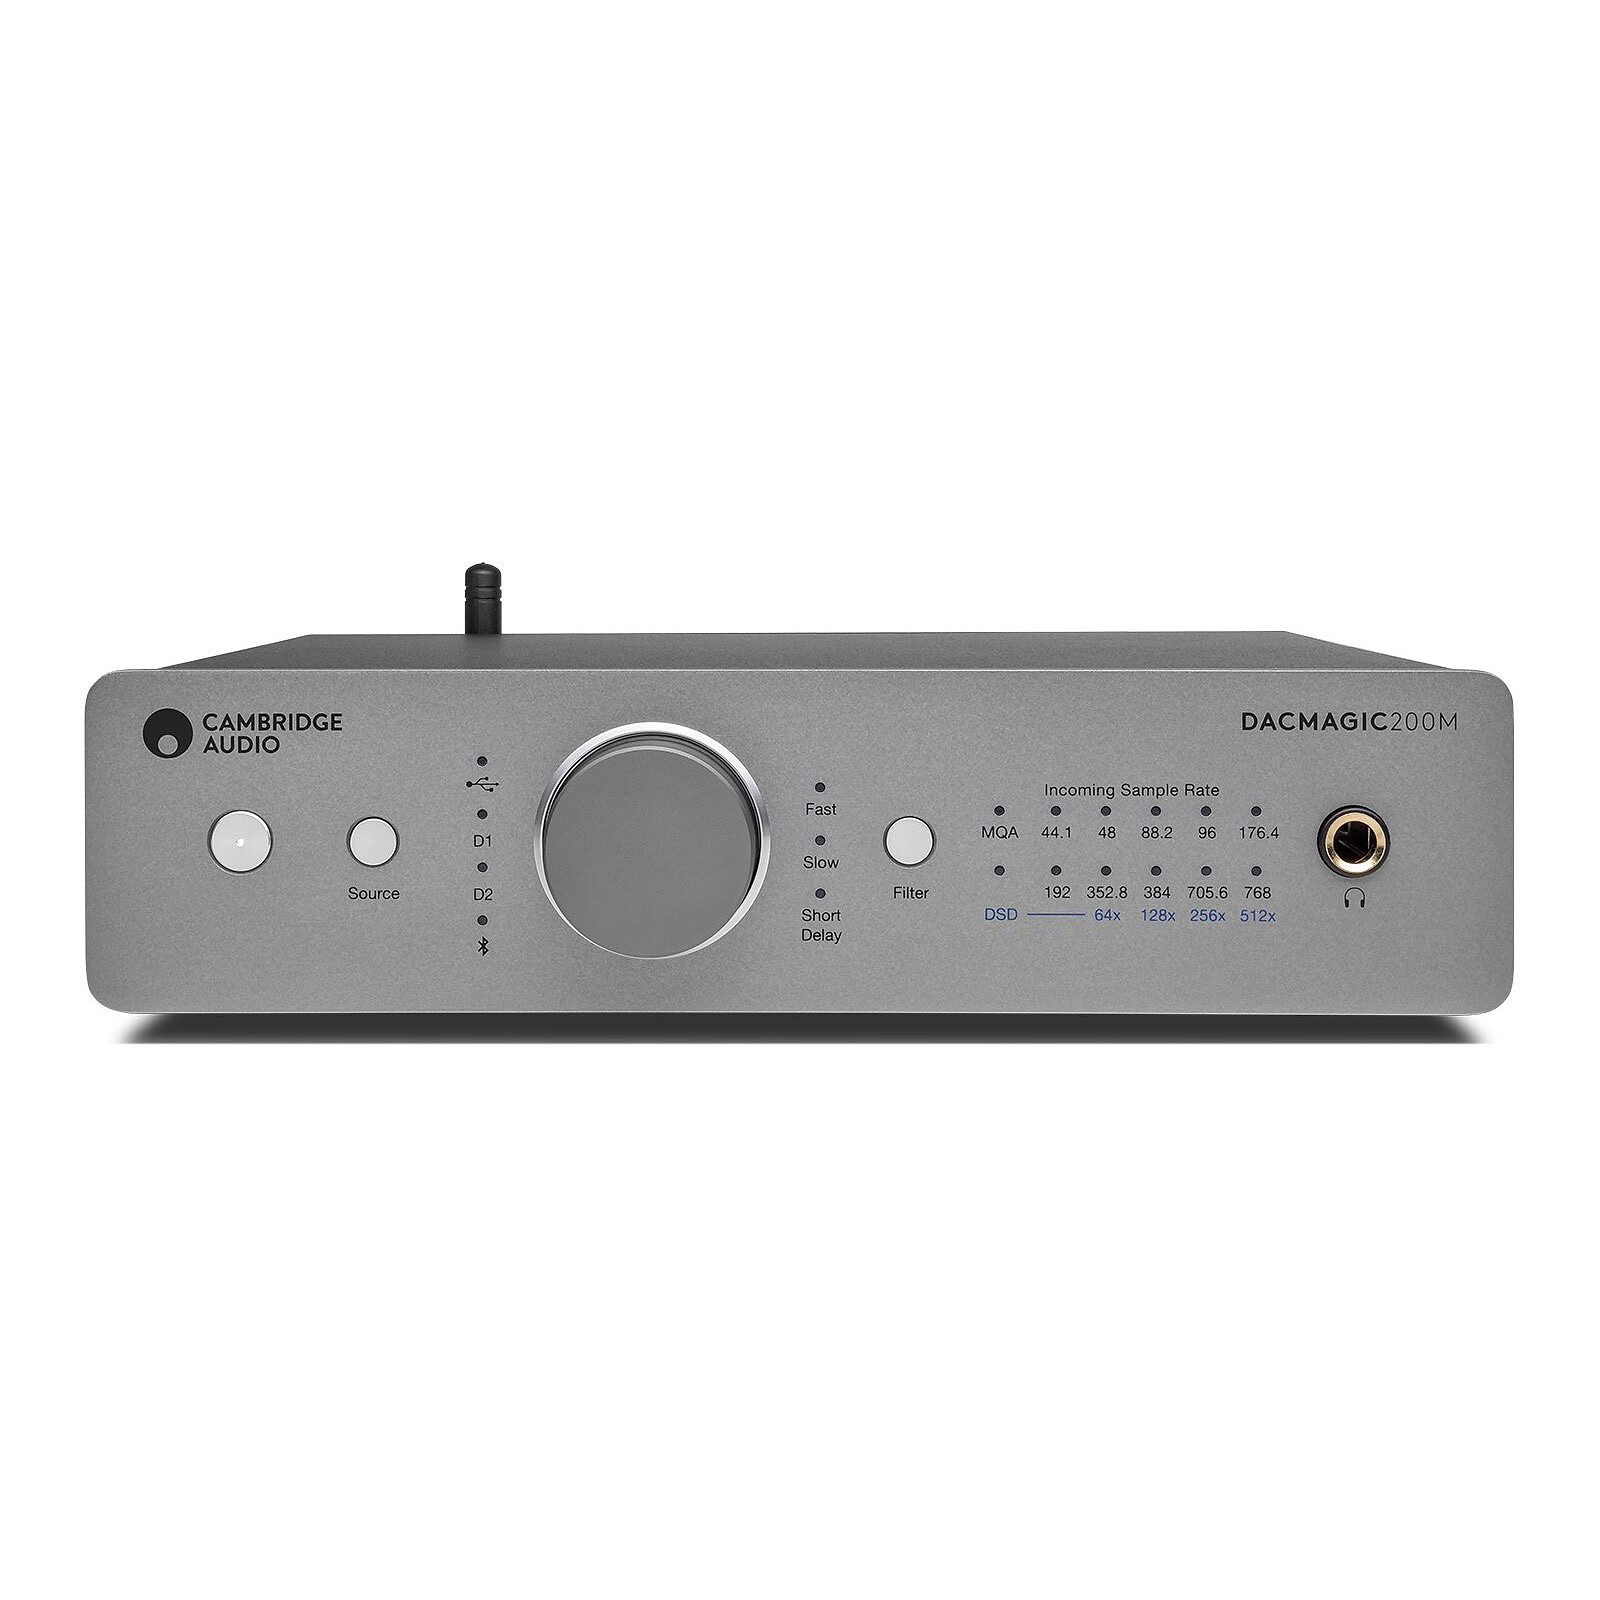 CGV Audioline Optic 13 - Adaptateur audio - Garantie 3 ans LDLC